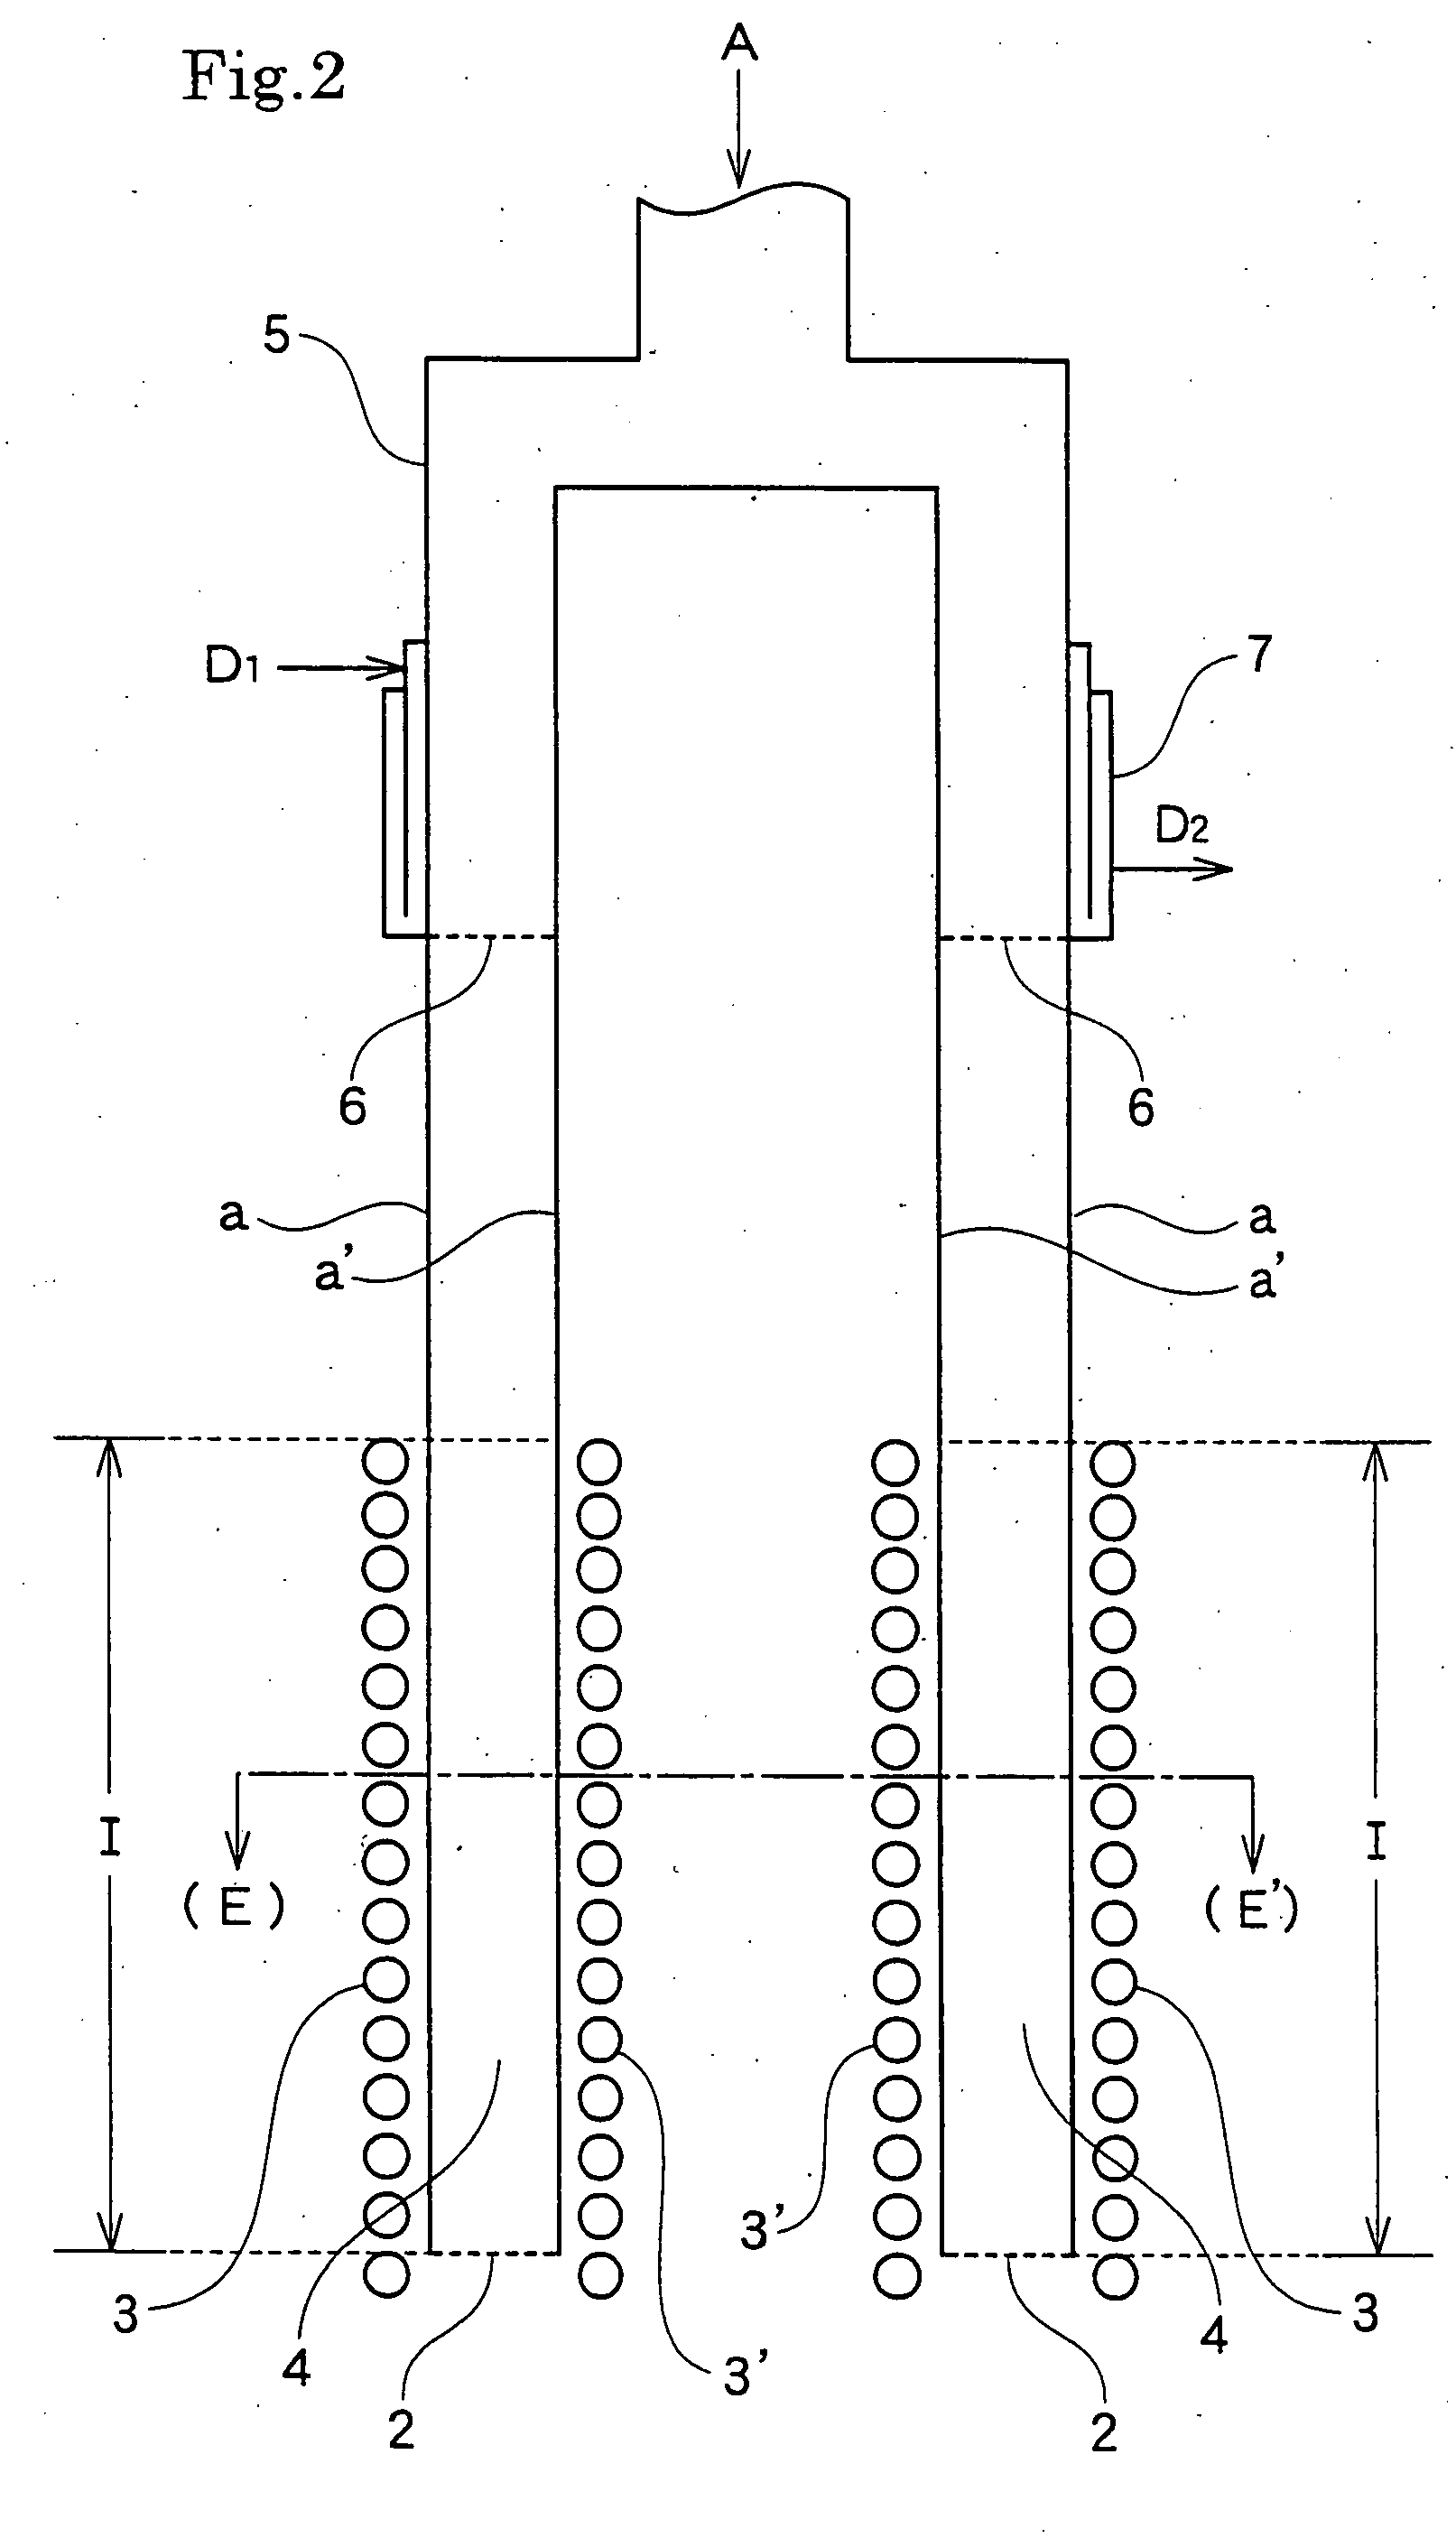 Reaction apparatus for producing silicon